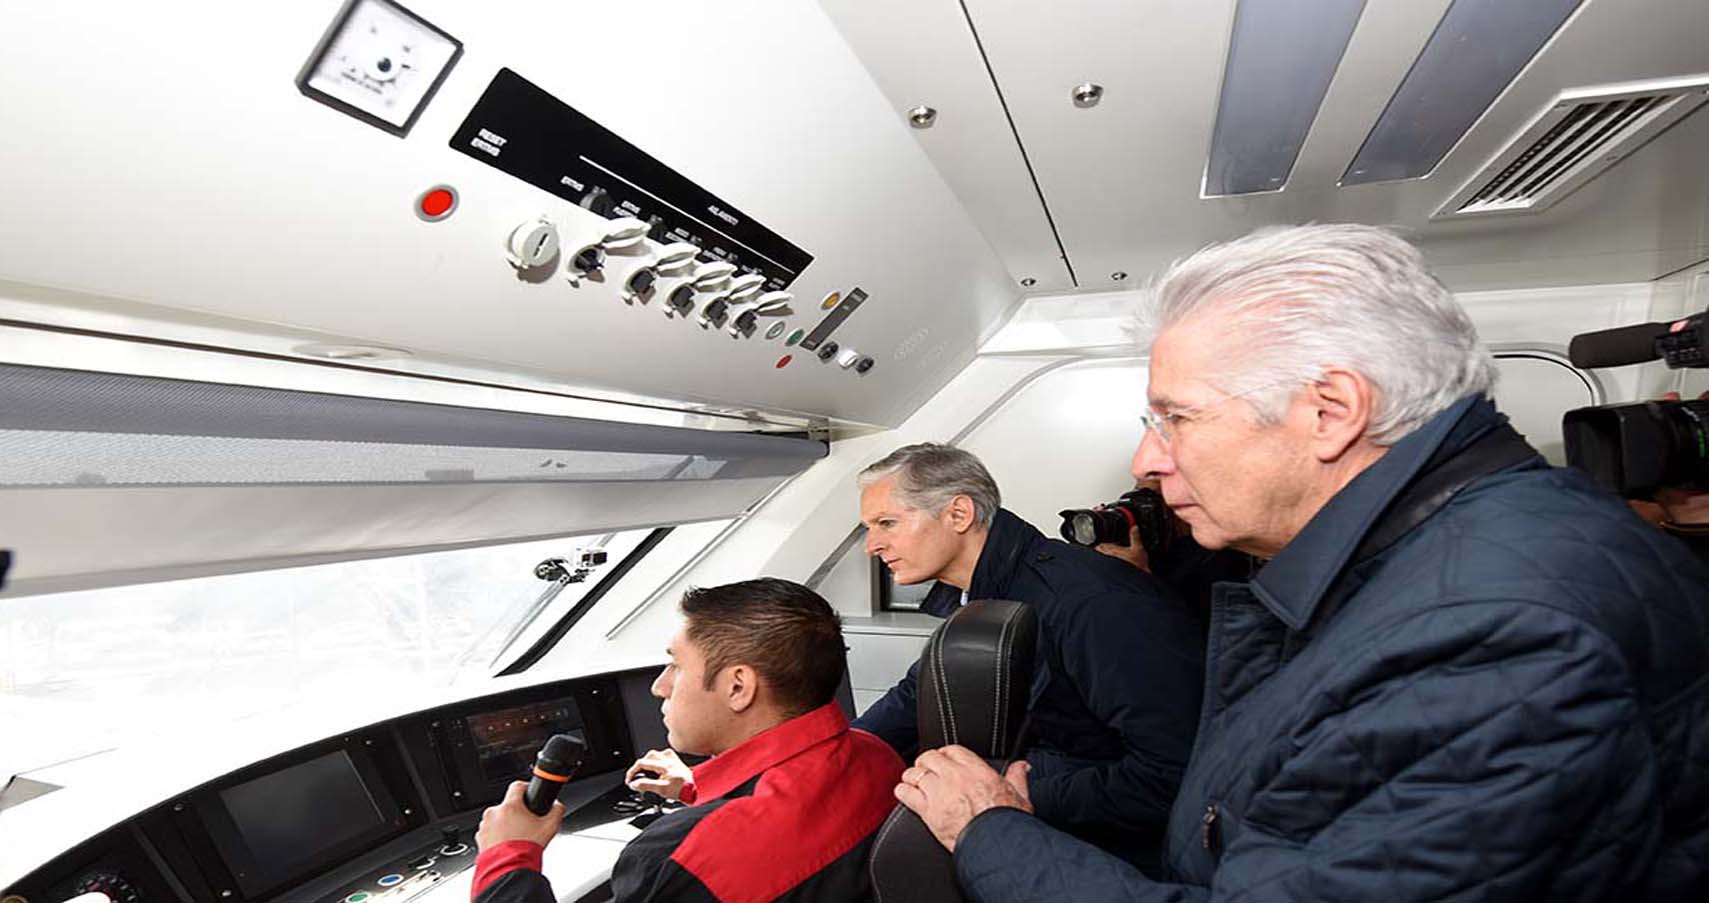 El Titular de la SCT y el Gobernador Mexiquense realizaron recorrido de supervisión de la obra del tren interurbano México-Toluca